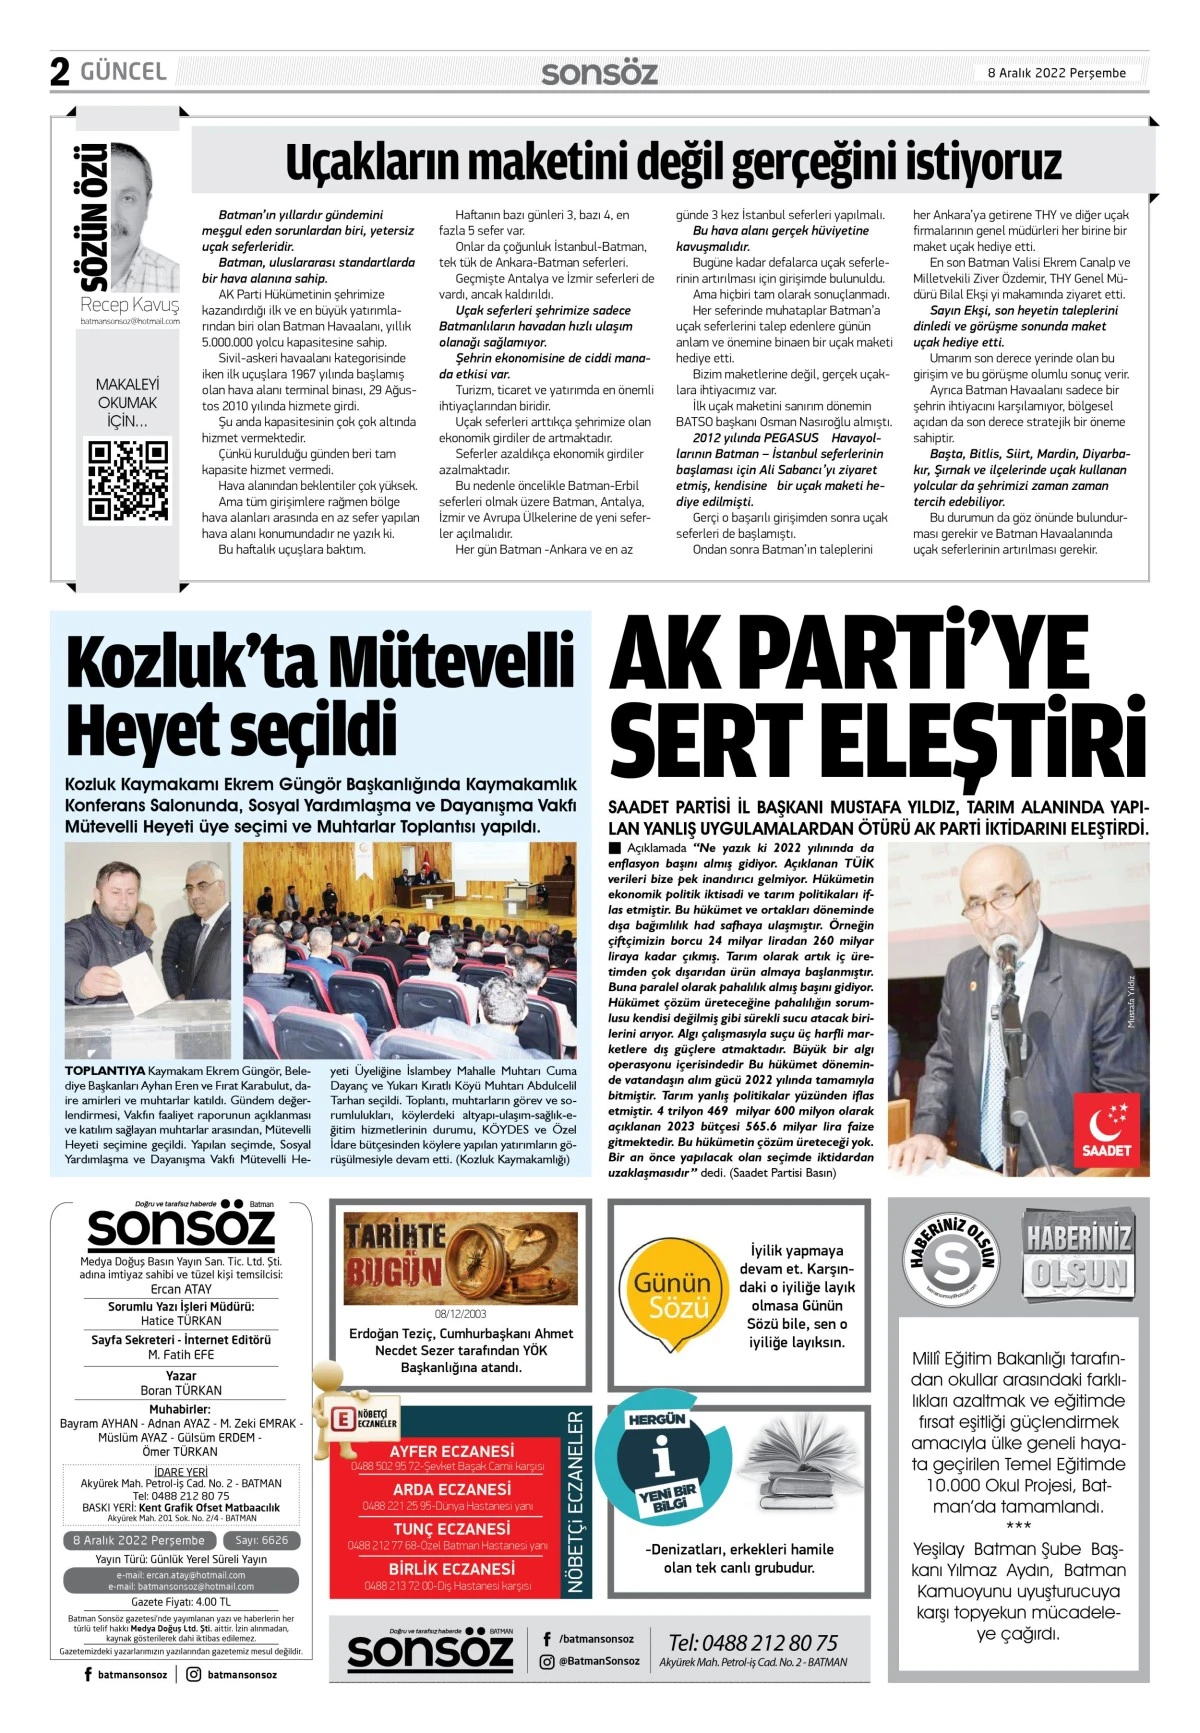 8 ARALIK 2022 e-gazete